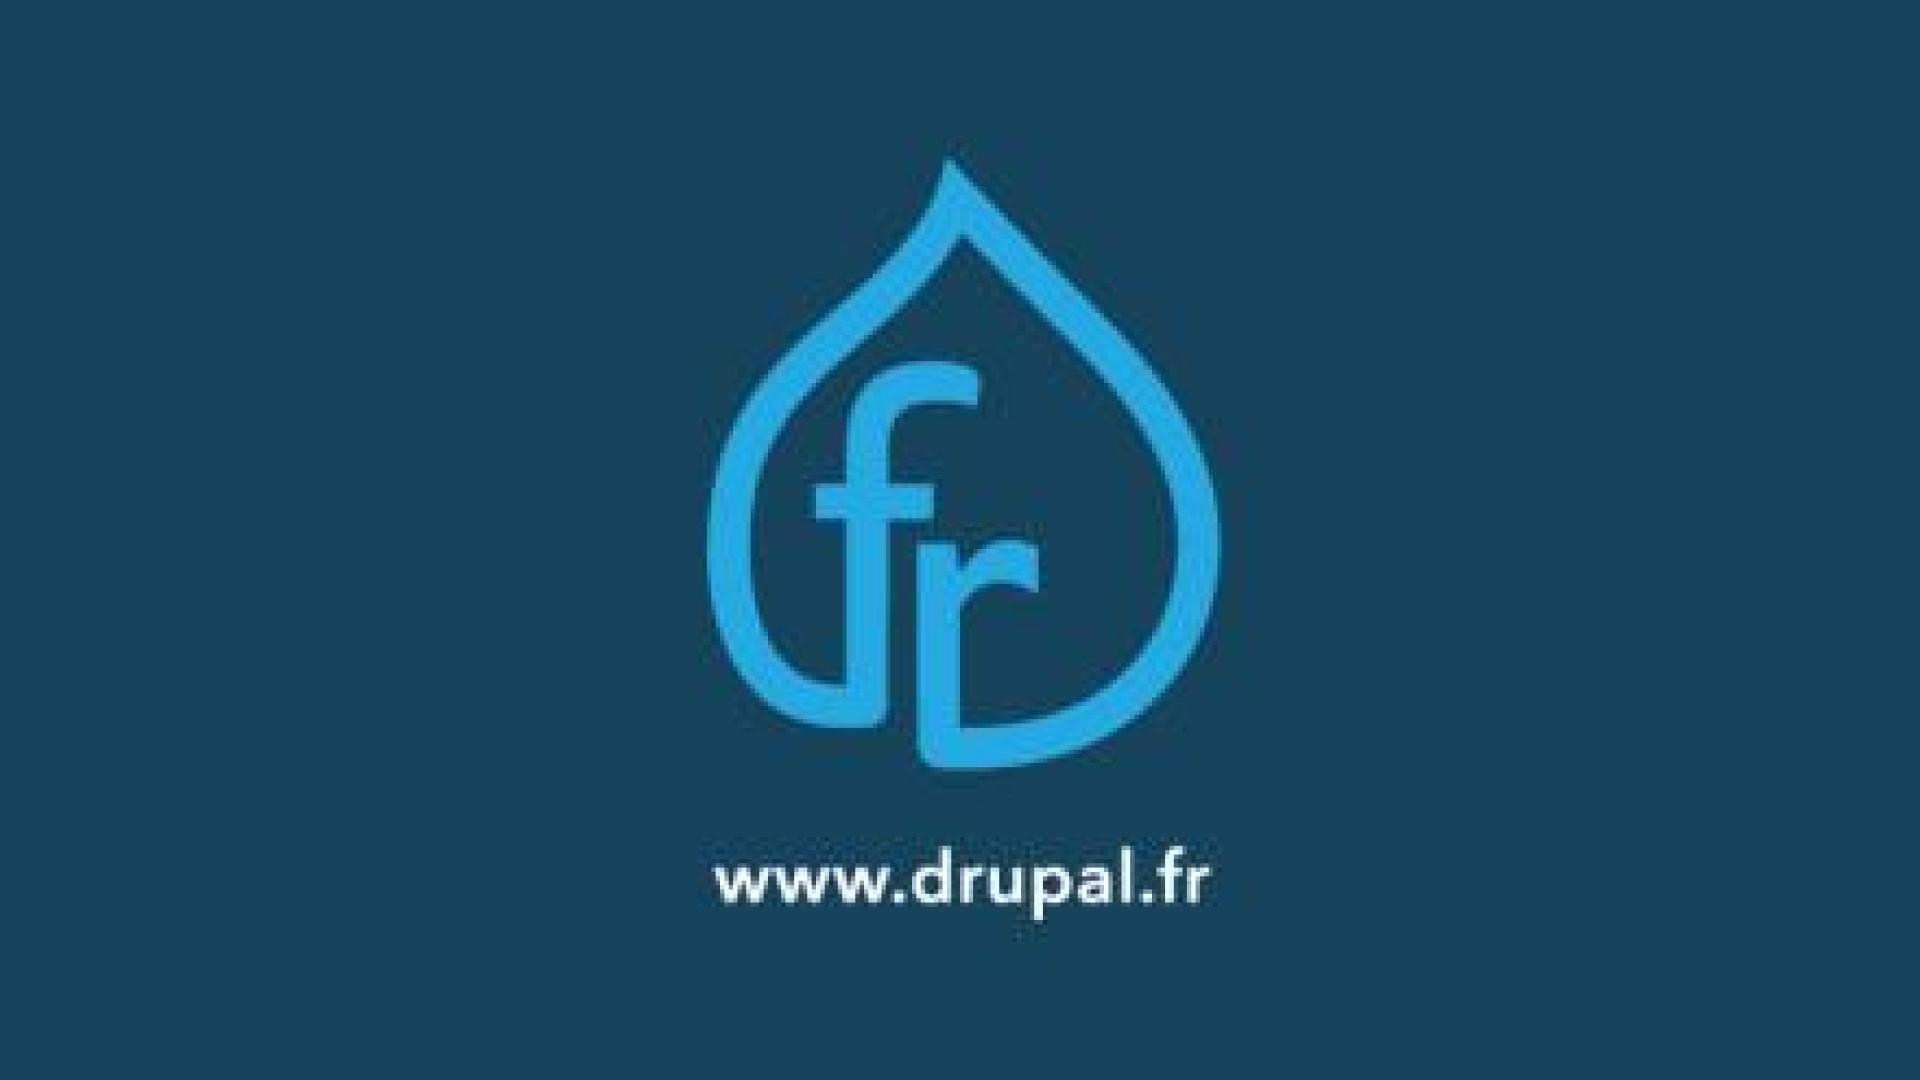 Drupal France & francophonie logo